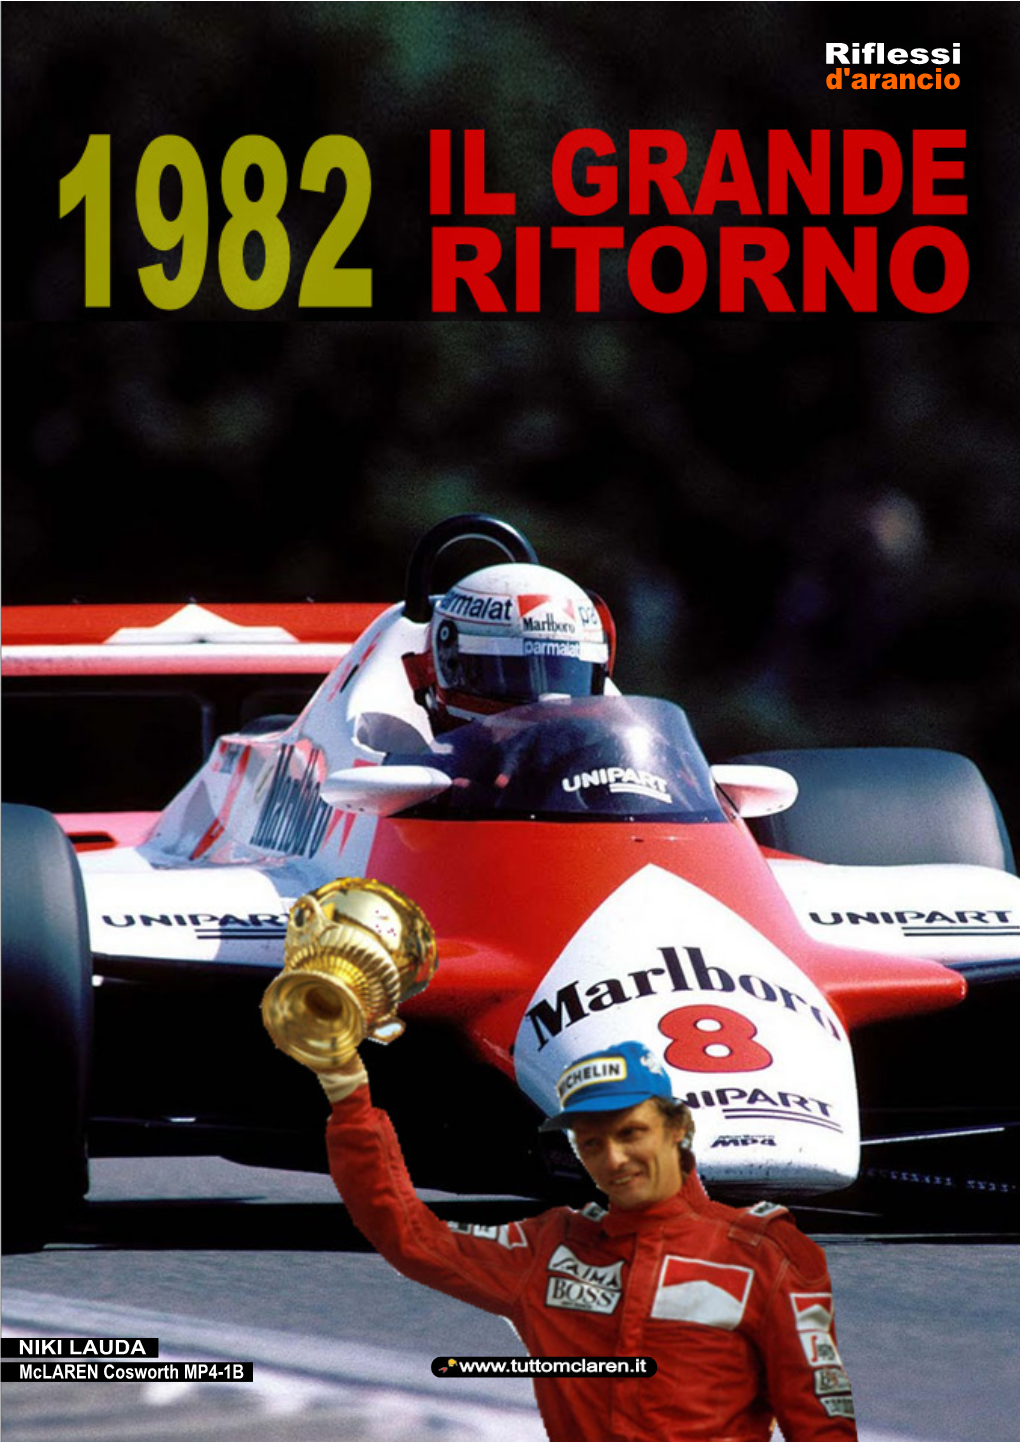 1982 È Però Un Anno Particolare, Perché Che La F1 Si Sta Importa Quale Sia Stato Il Reale Motivo